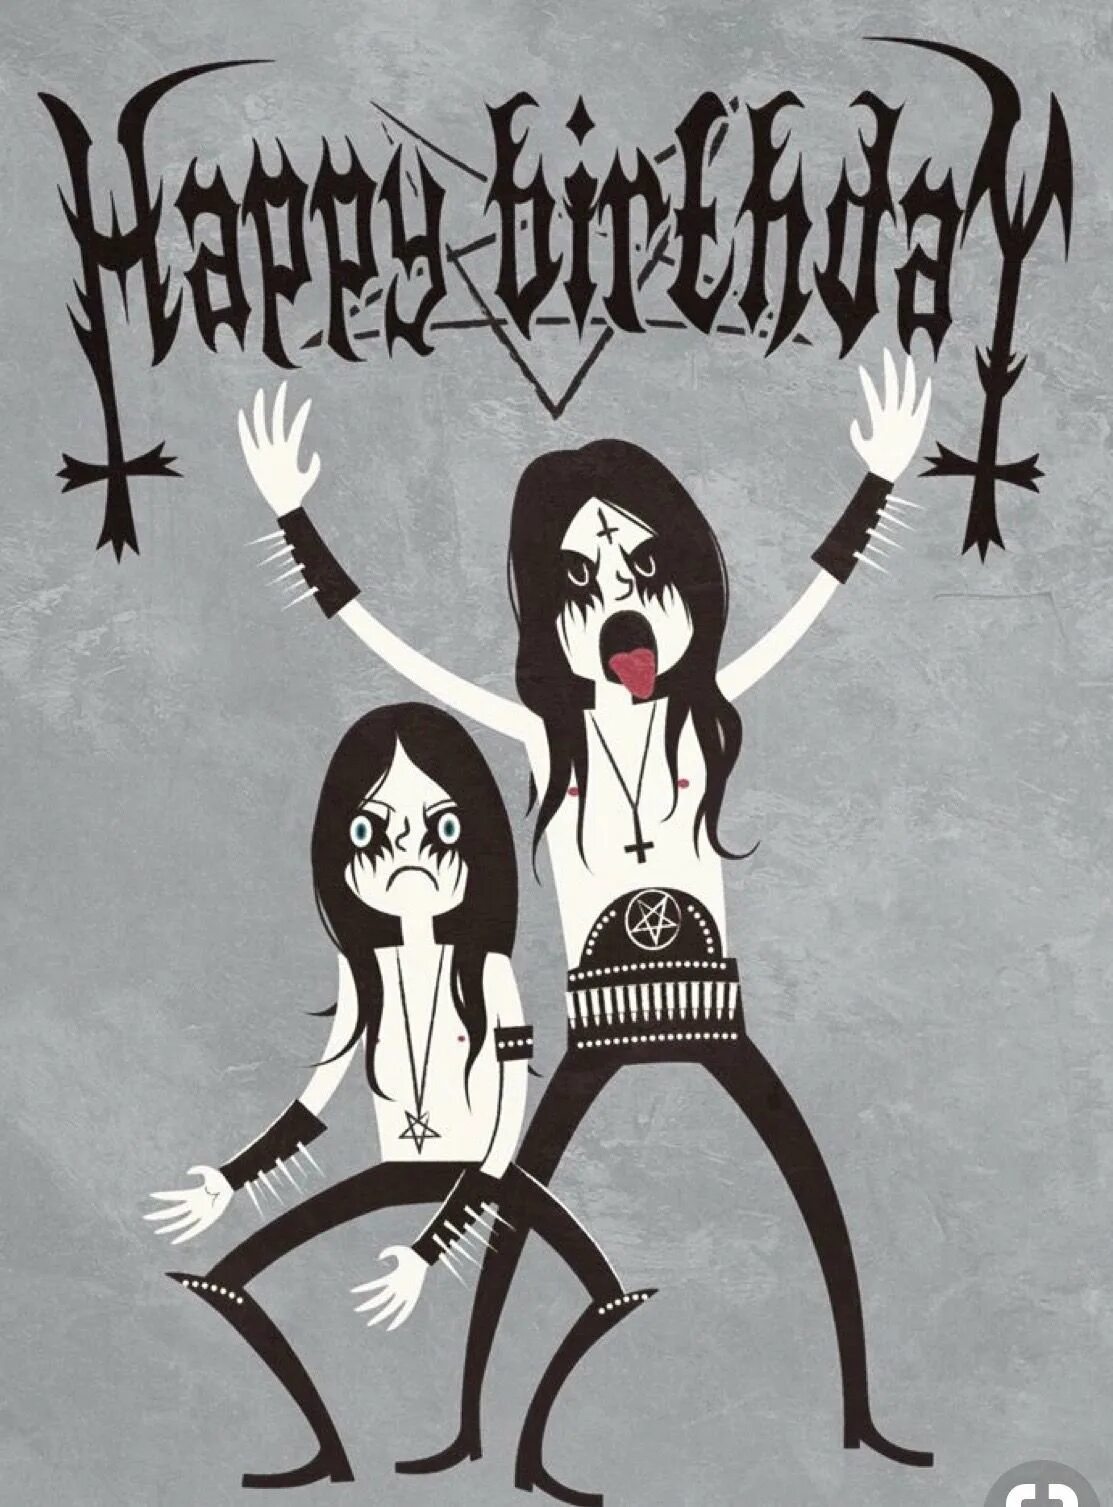 День рождения гота. С днём рождения рокеру. Готическое поздравление с днем рождения. С днём рождения Металлисту. Открытка в стиле металл.